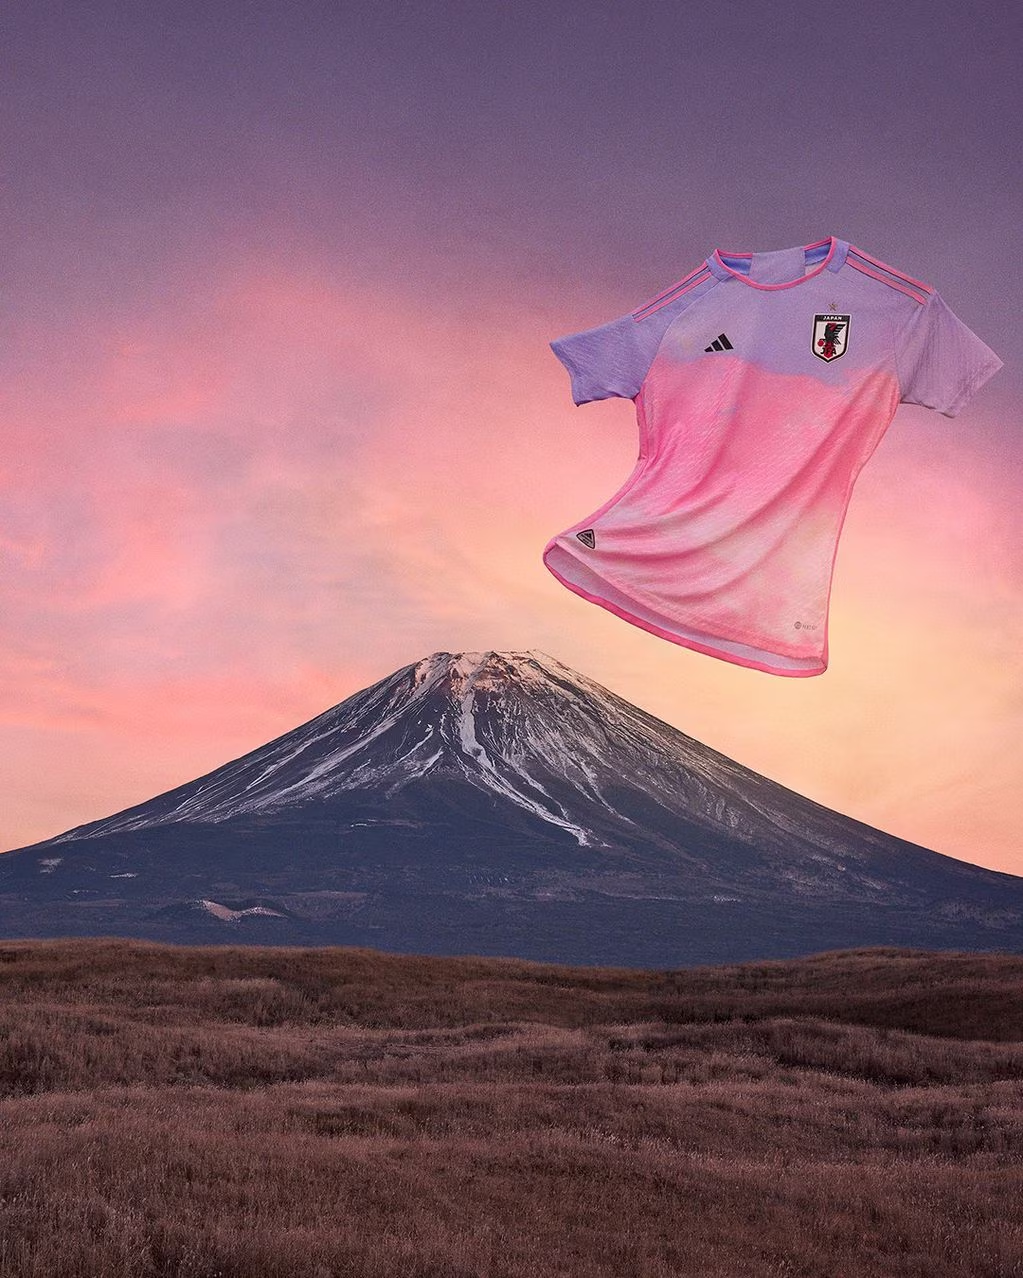 La naturaleza inspiró las nuevas camisetas del Mundial femenino de fútbol • Canal C